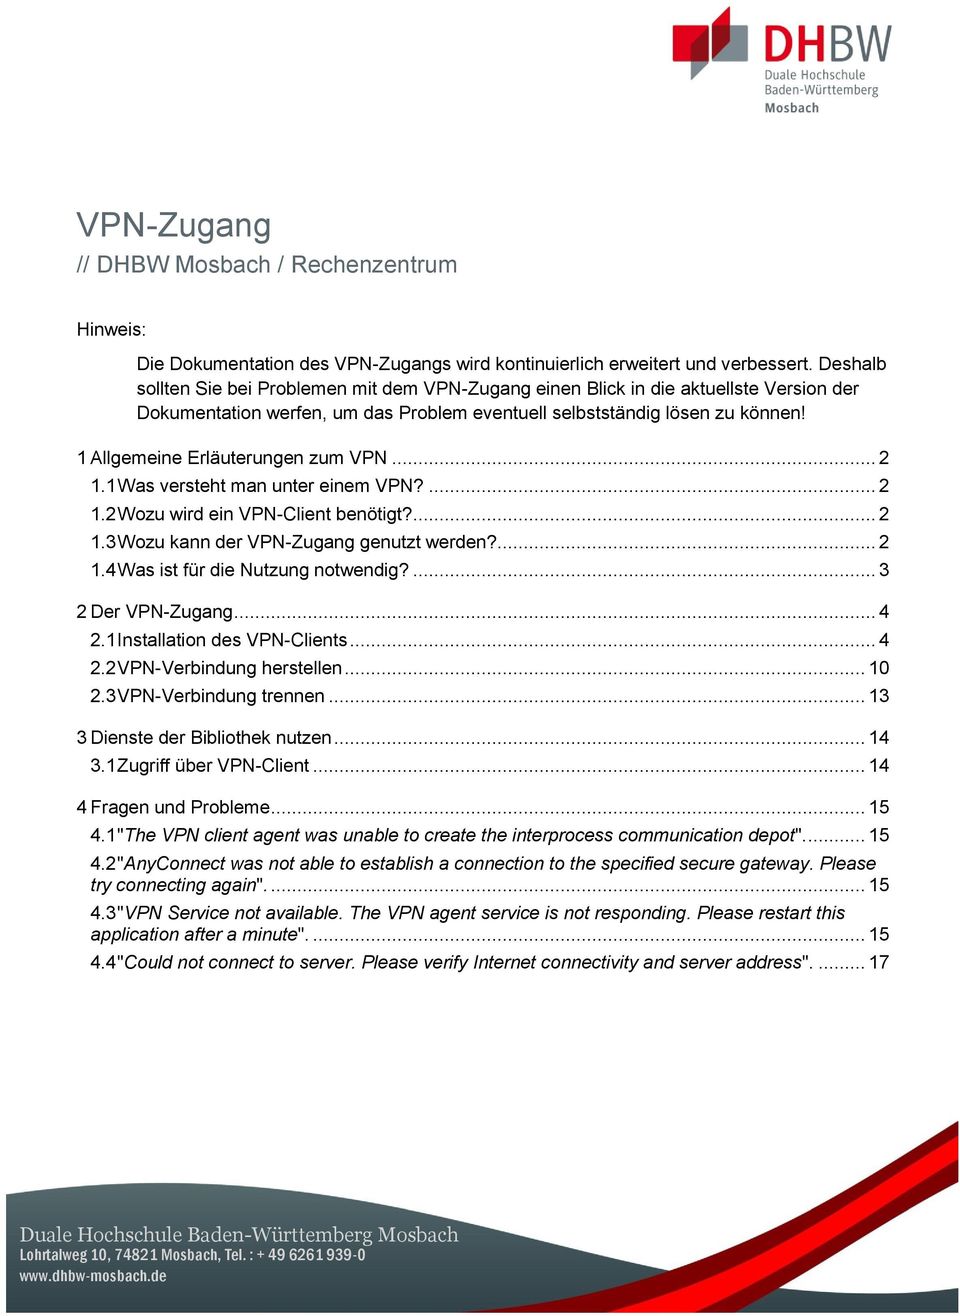 1 Allgemeine Erläuterungen zum VPN... 2 1.1 Was versteht man unter einem VPN?... 2 1.2 Wozu wird ein VPN-Client benötigt?... 2 1.3 Wozu kann der VPN-Zugang genutzt werden?... 2 1.4 Was ist für die Nutzung notwendig?